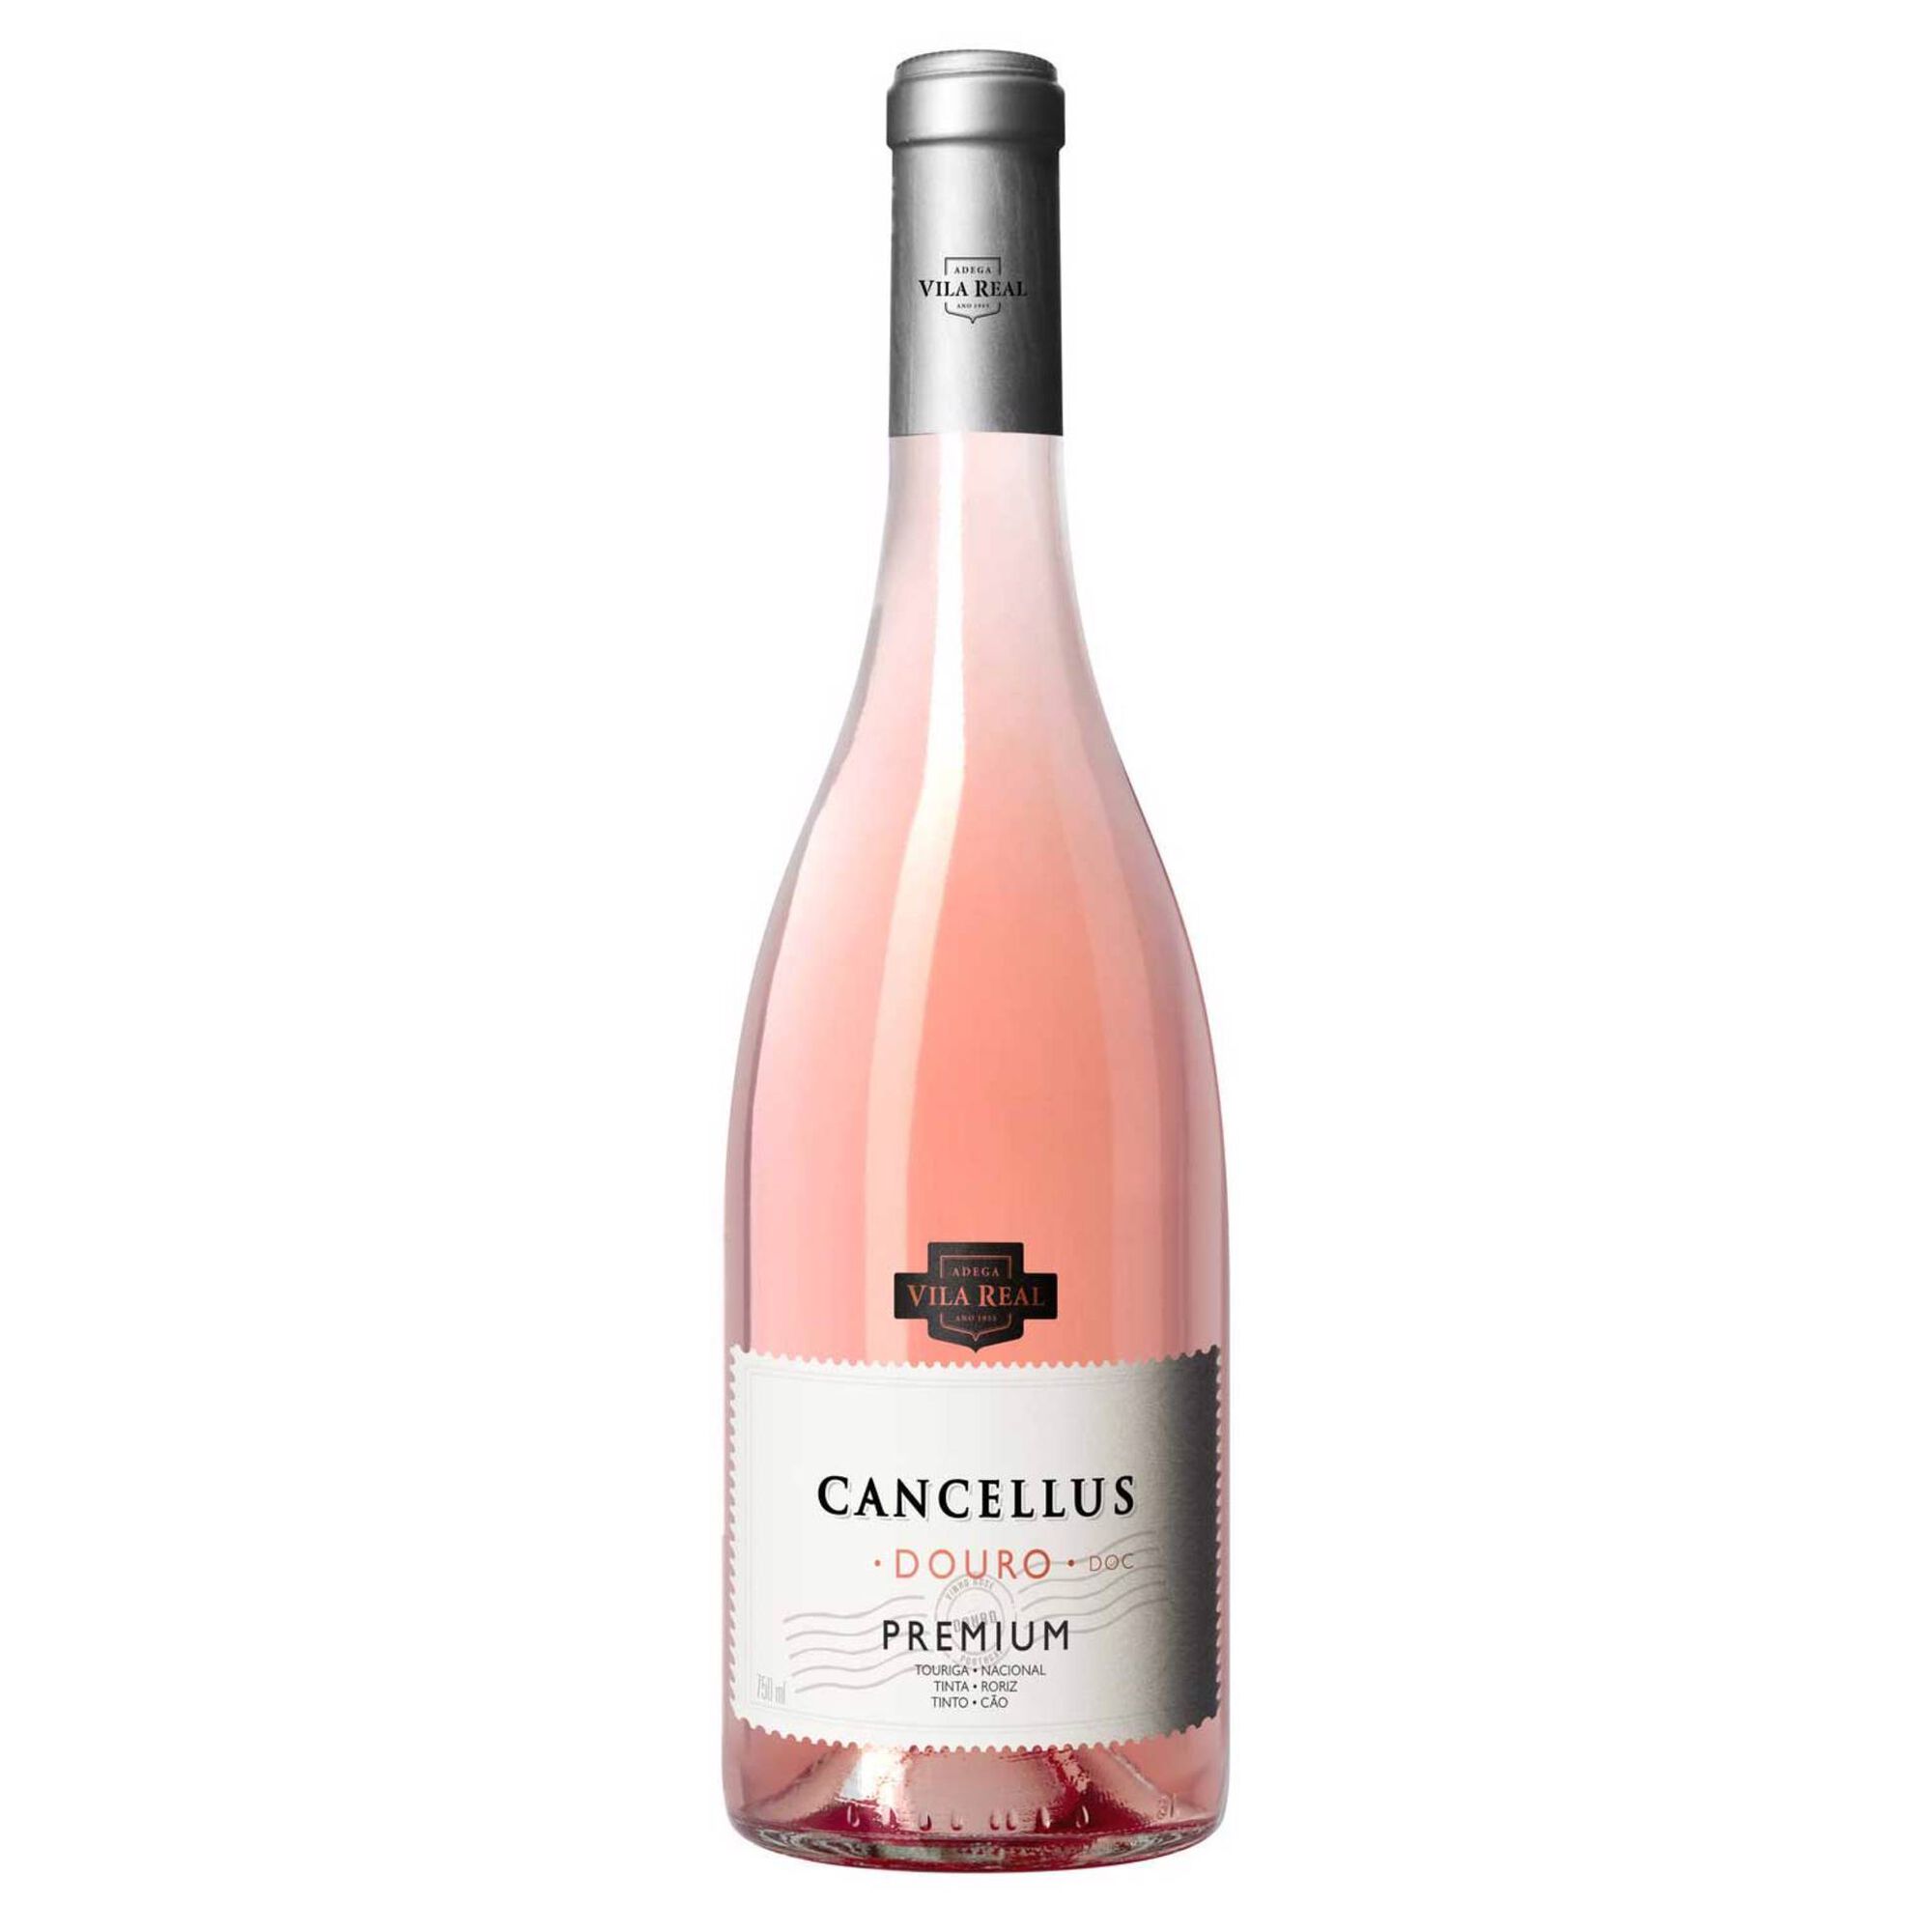 Cancellus Premium DOC Douro Vinho Rosé